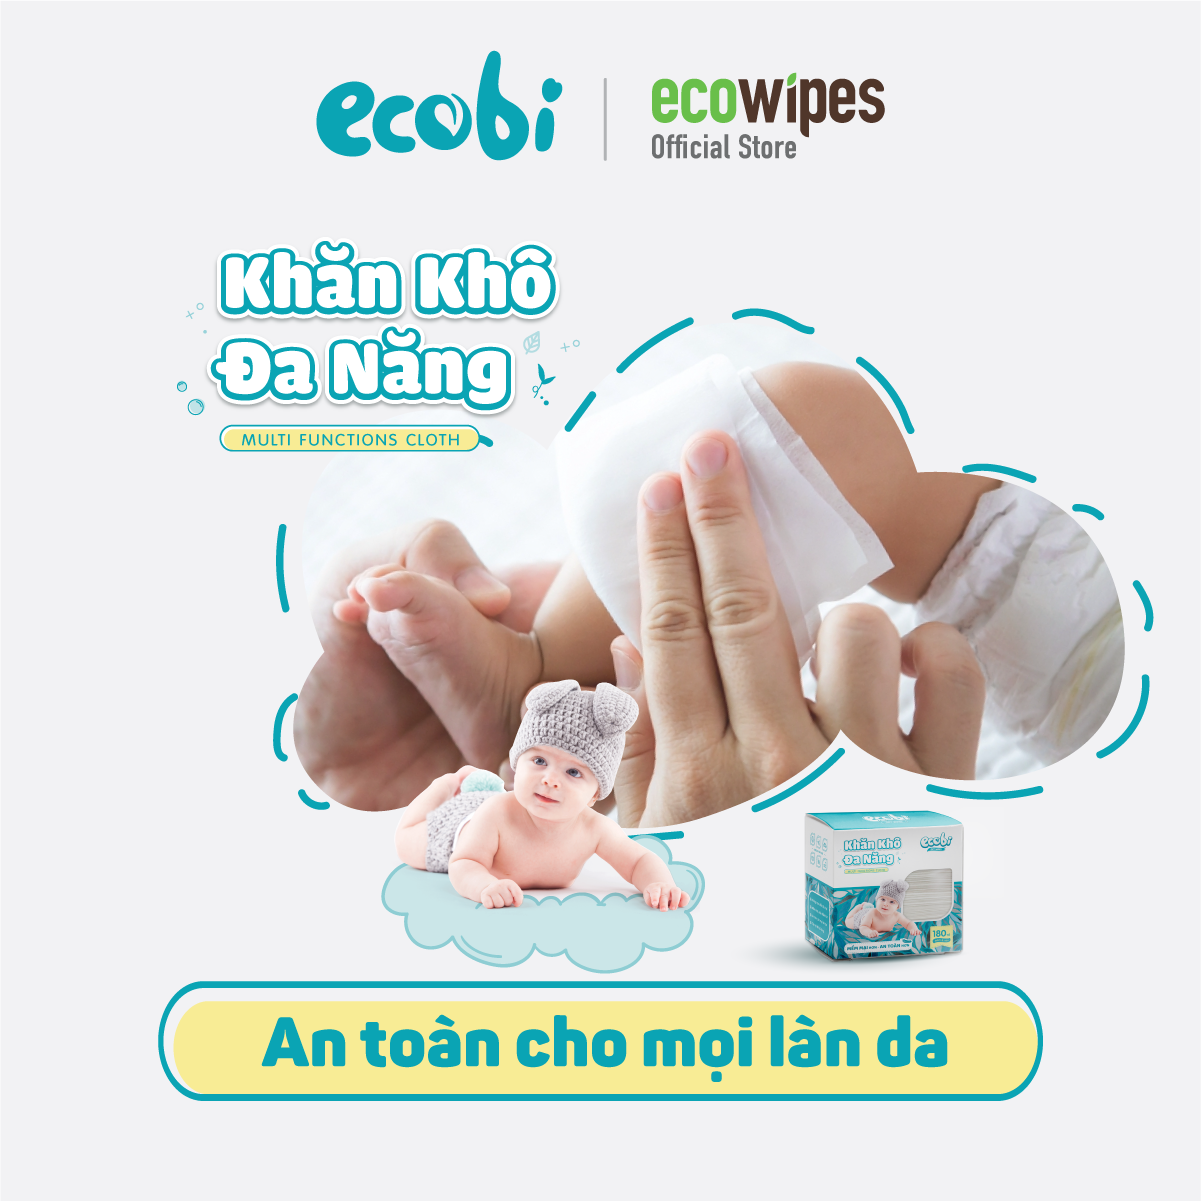 Combo 03 hộp khăn khô đa năng cho bé Ecobi hộp 180 tờ dùng thay khăn sữa an toàn cho trẻ sơ sinh